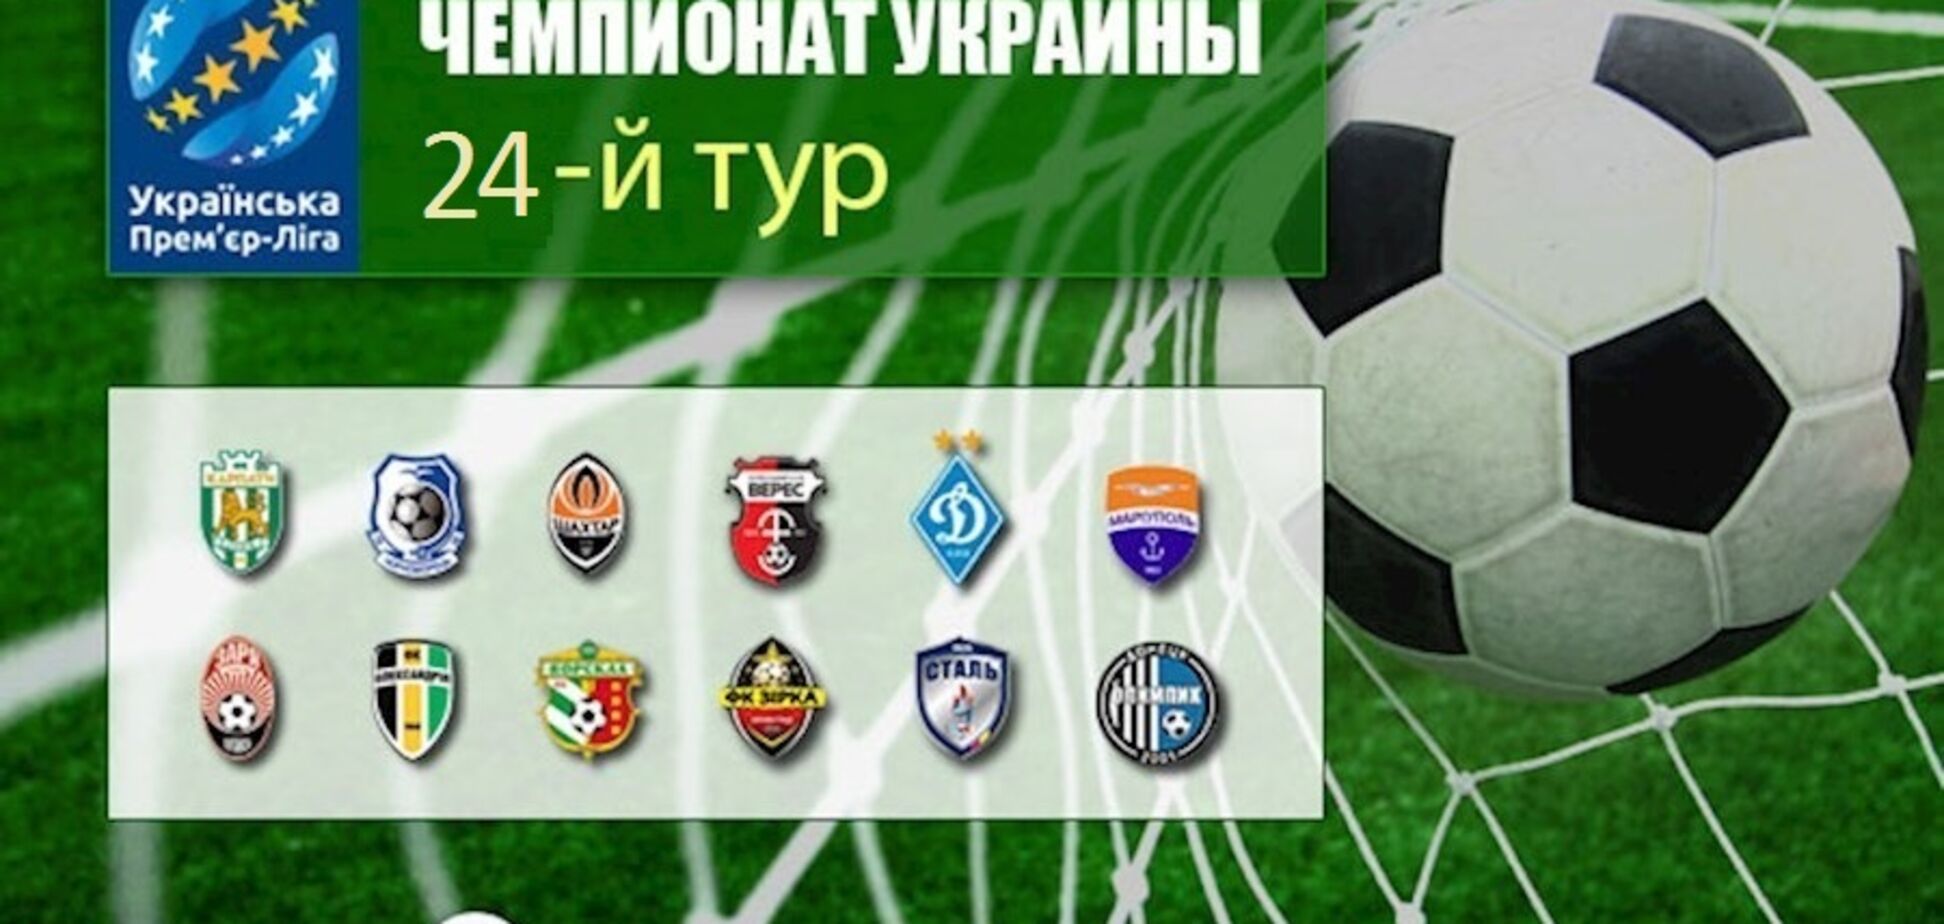 24-й тур чемпіонату України з футболу: результати, огляди, турнірна таблиця